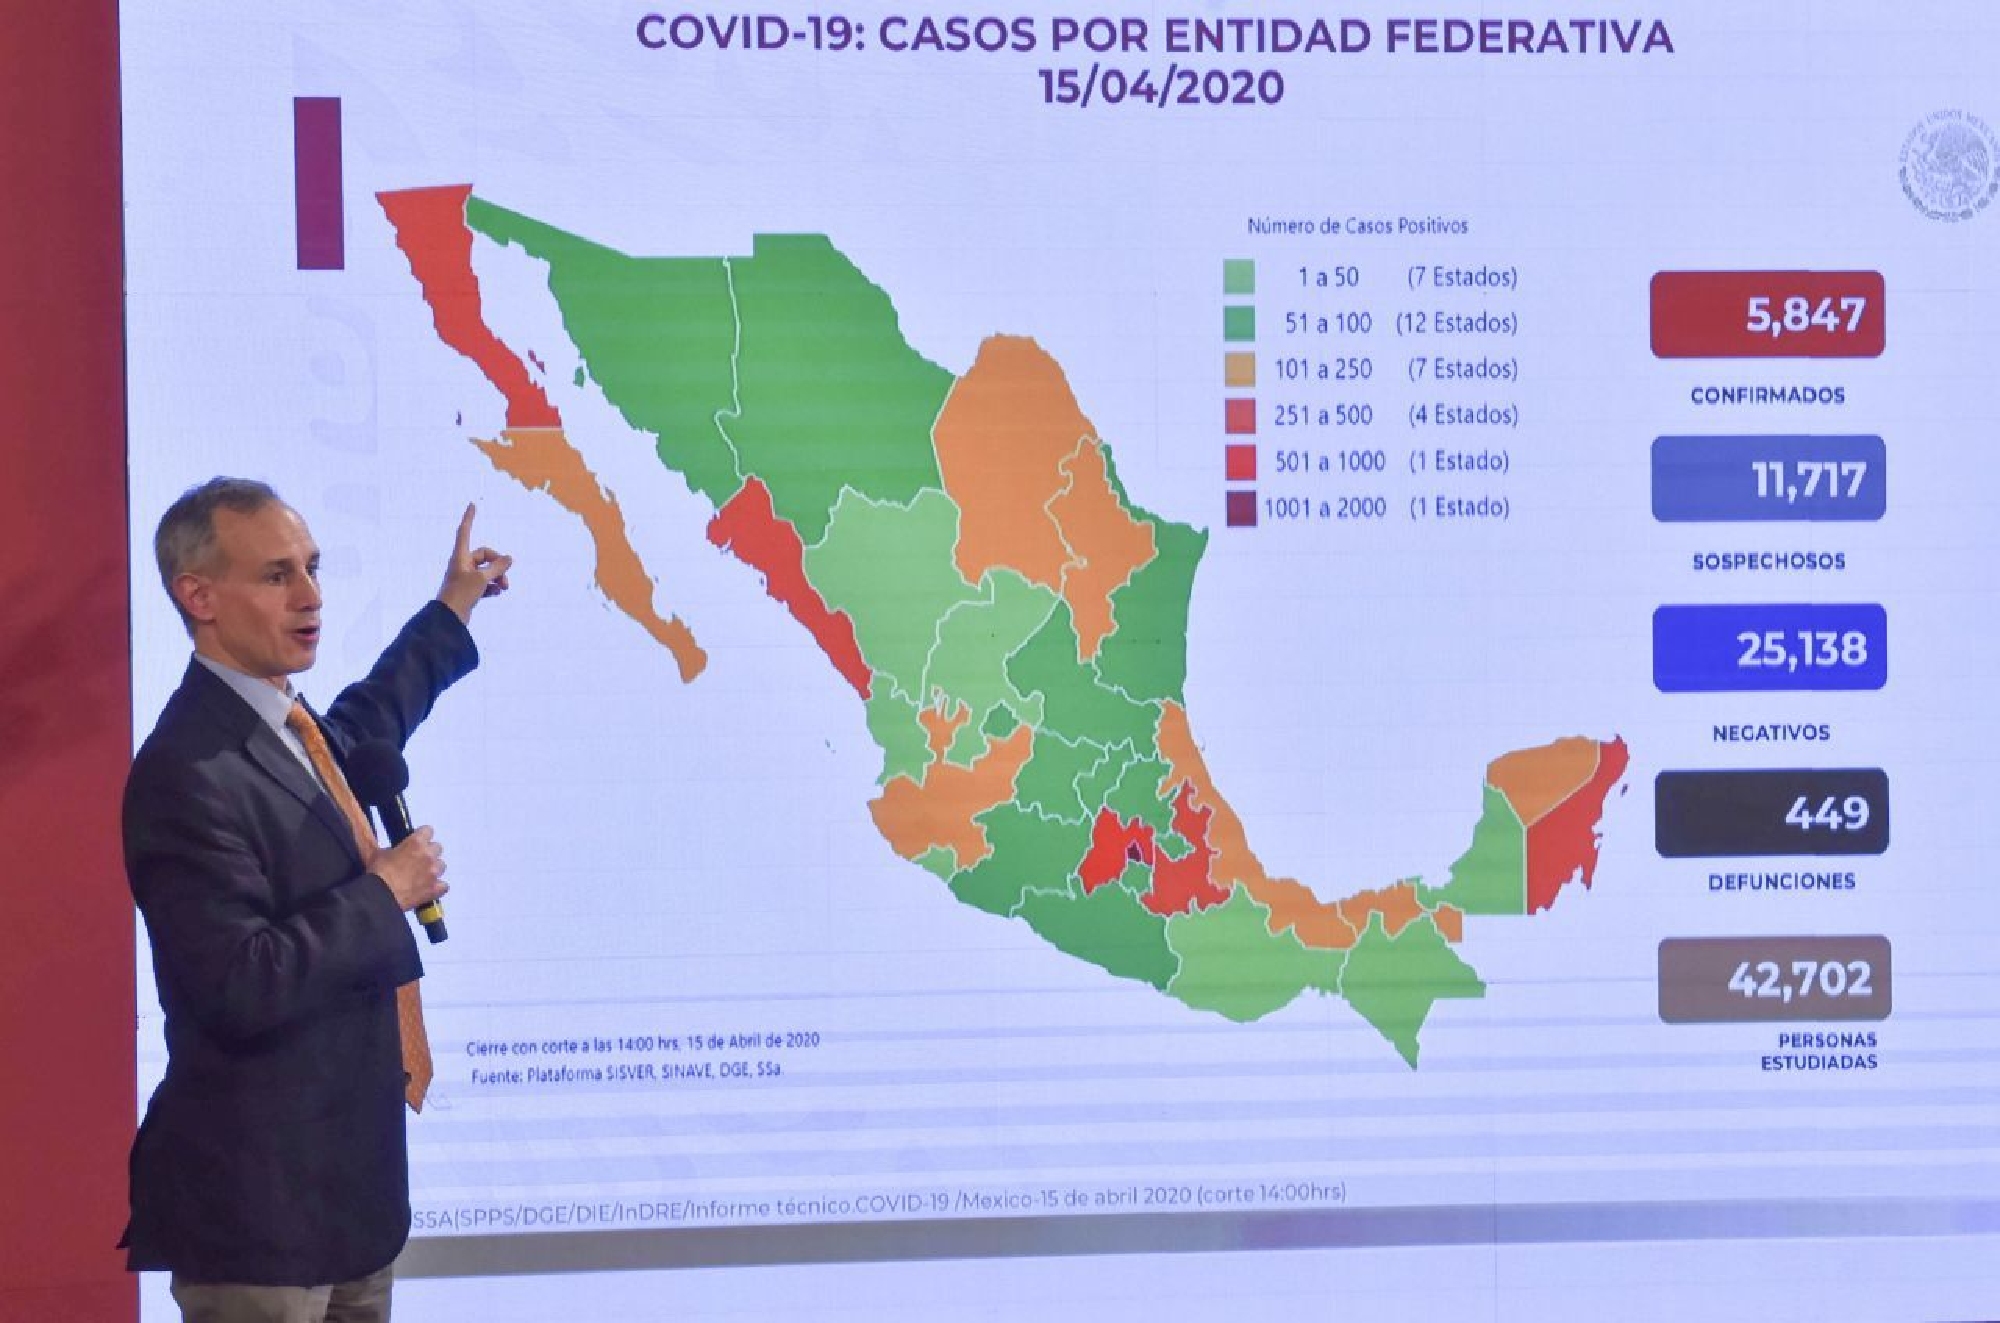 Mexico-Coronavirus-Noticias-México-Cuando-Termina-la-Cuarentena-Cuando-Acaba-Se-Extiende-CDMX-Se-Alarga, Ciudad de México, 16 de abril 2020